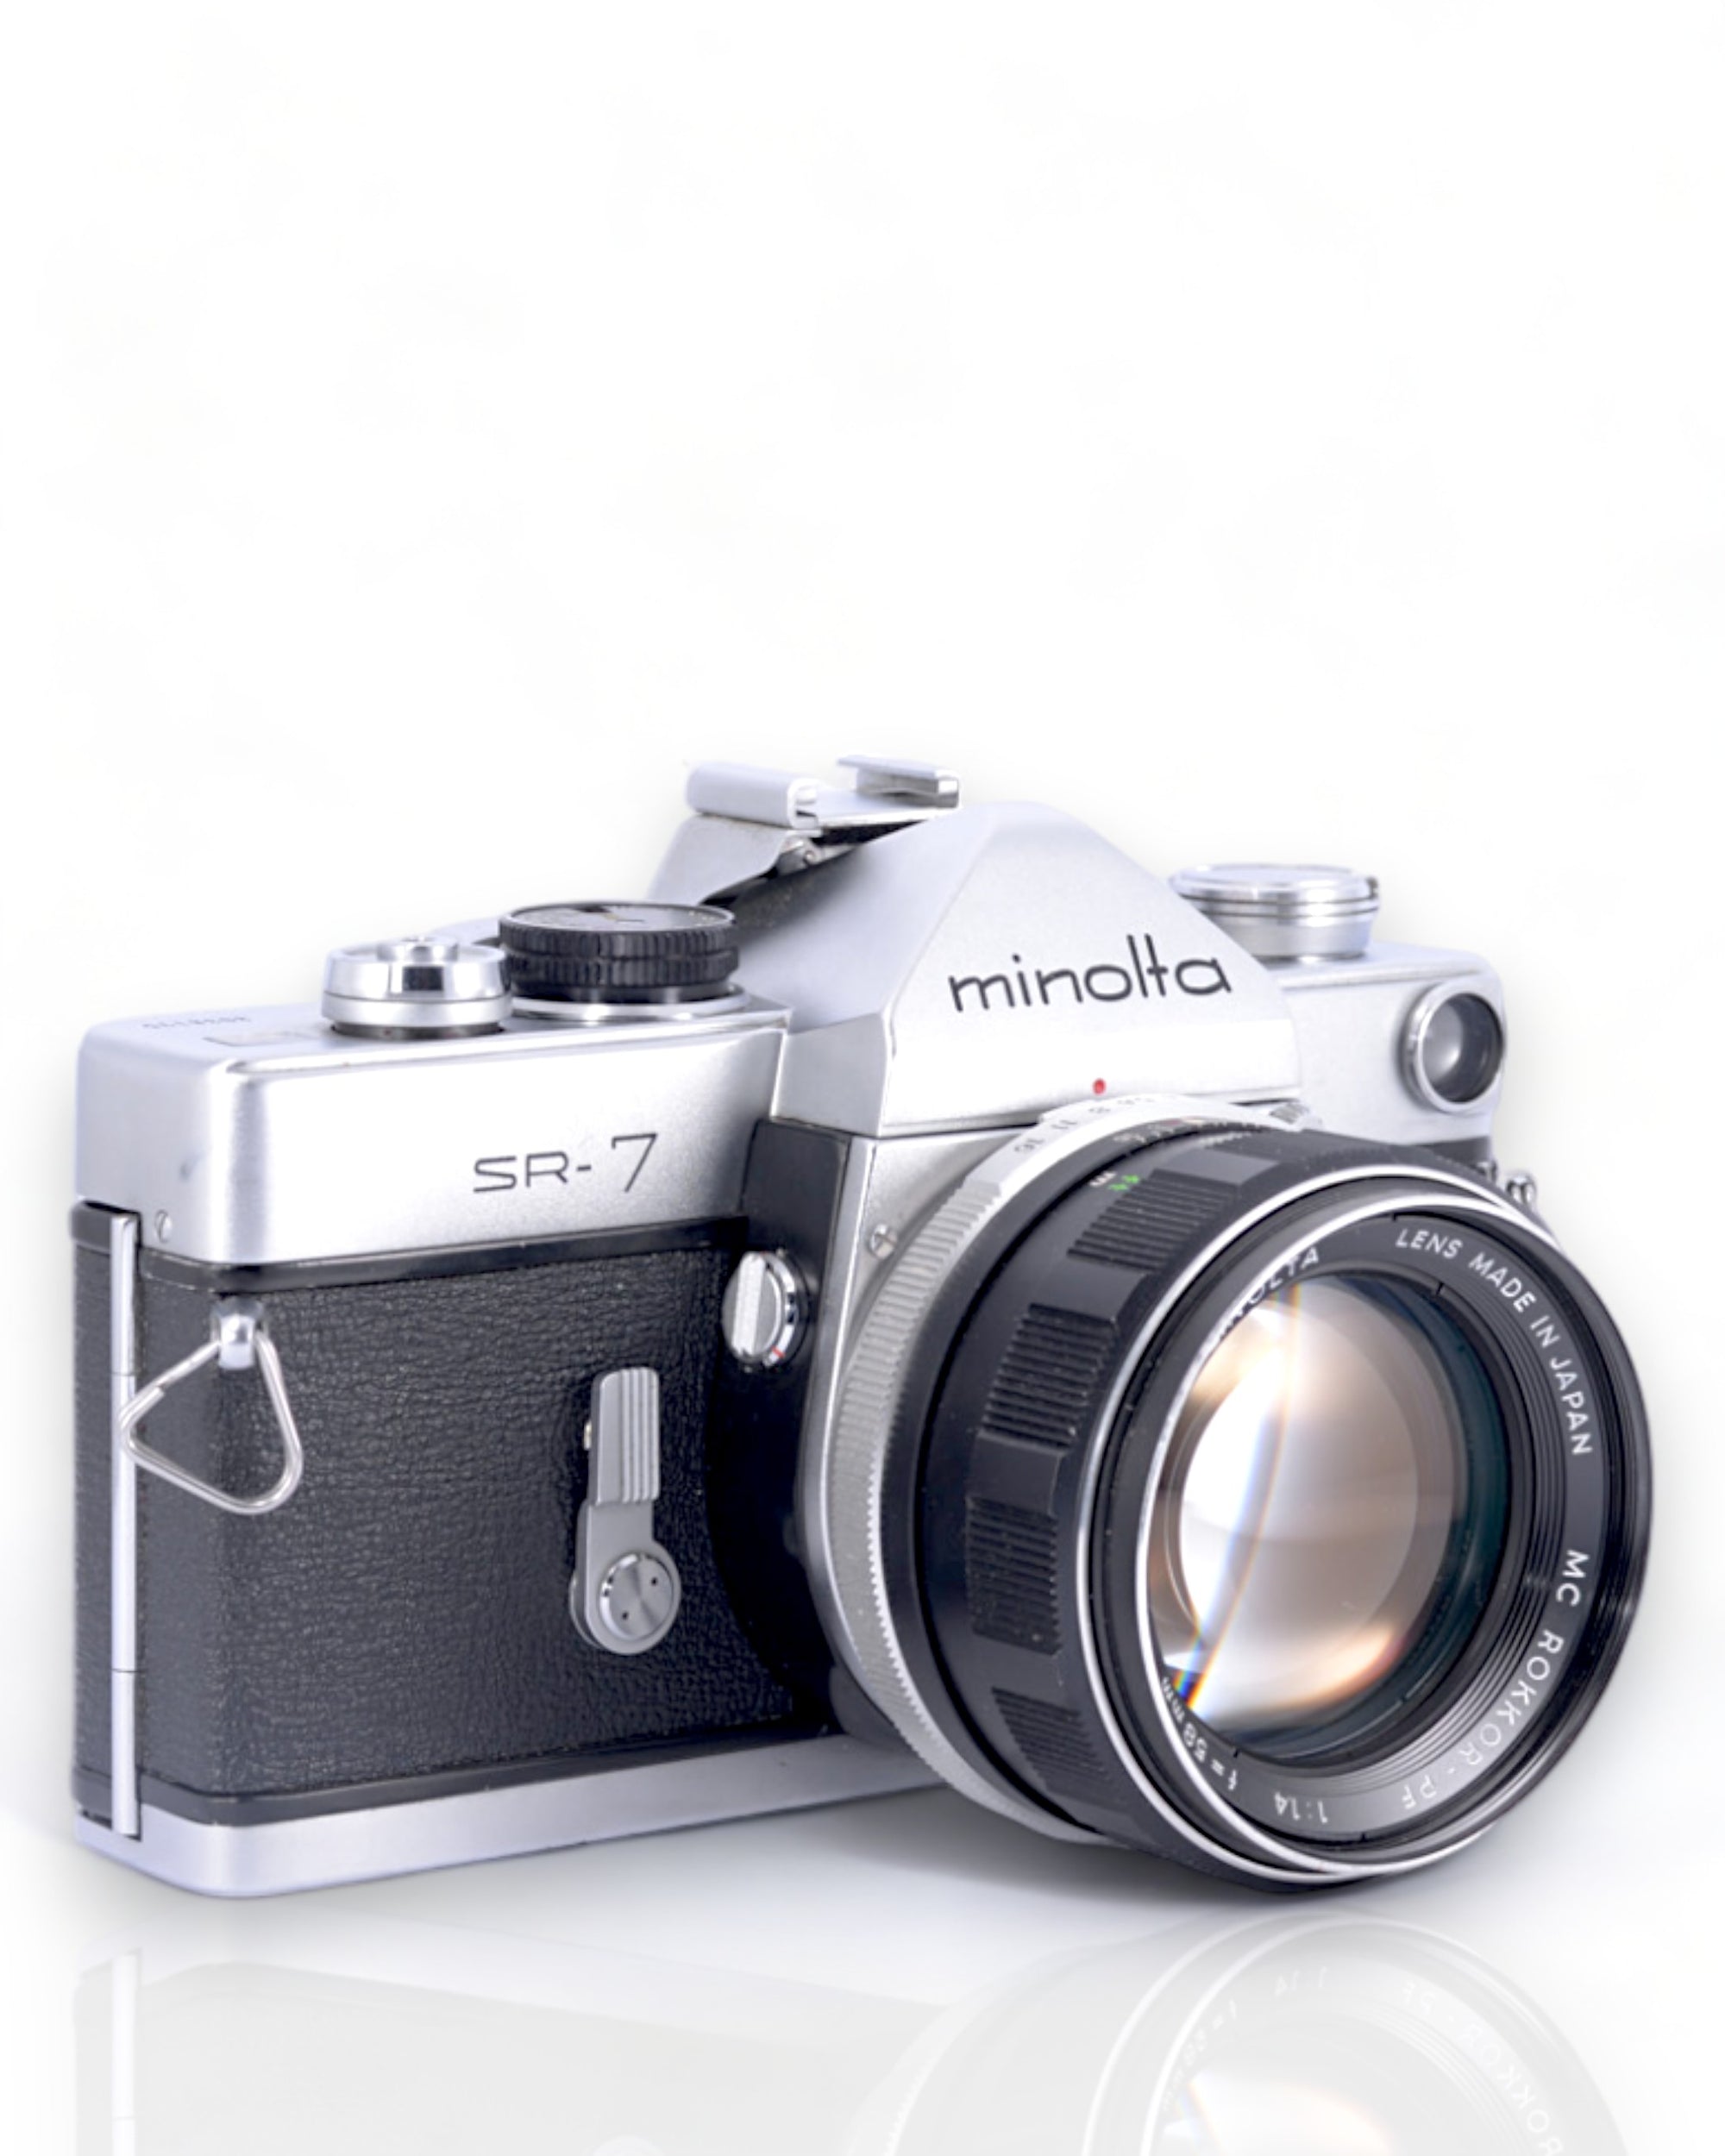 Minolta SR-7 35mm SLR Film Camera with 58mm f1.4 Lens